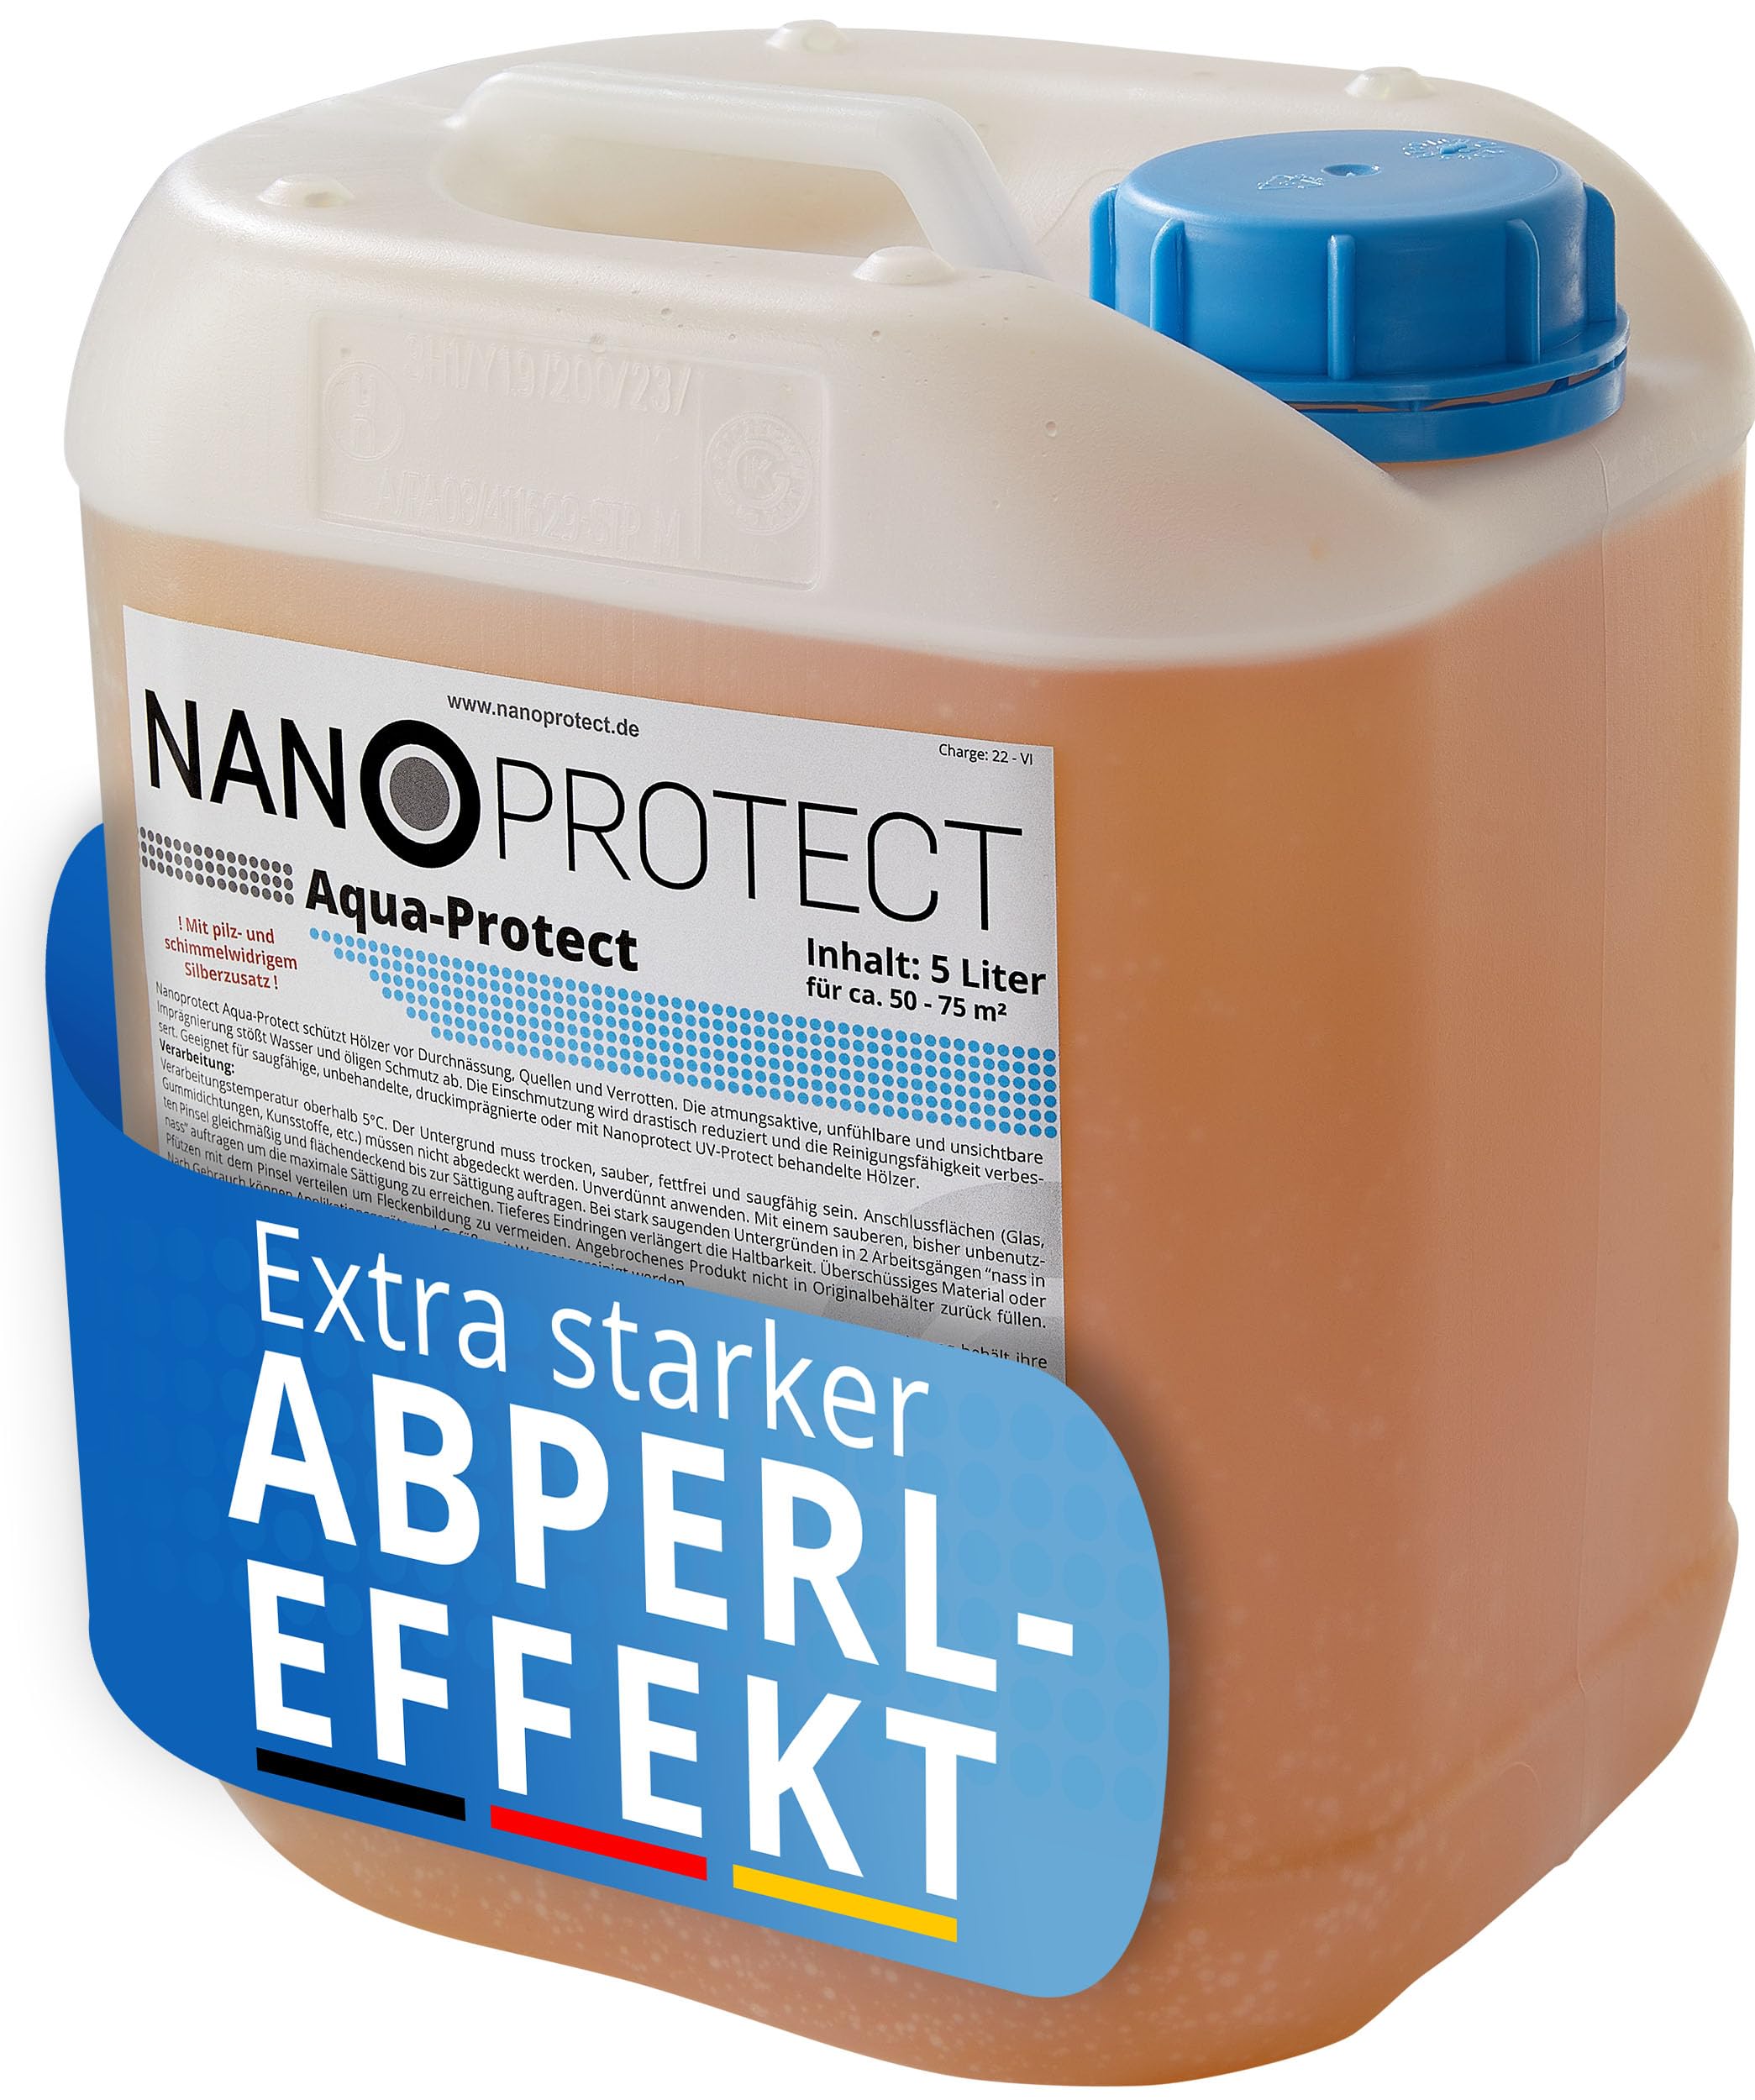 Nanoprotect Aqua-Protect | Holzimprägnierung mit Abperleffekt gegen Nässeaufnahme und Verschmutzung | 5 Liter für ca. 50-75 m² | Wasserbasiert | Für alle Holzarten